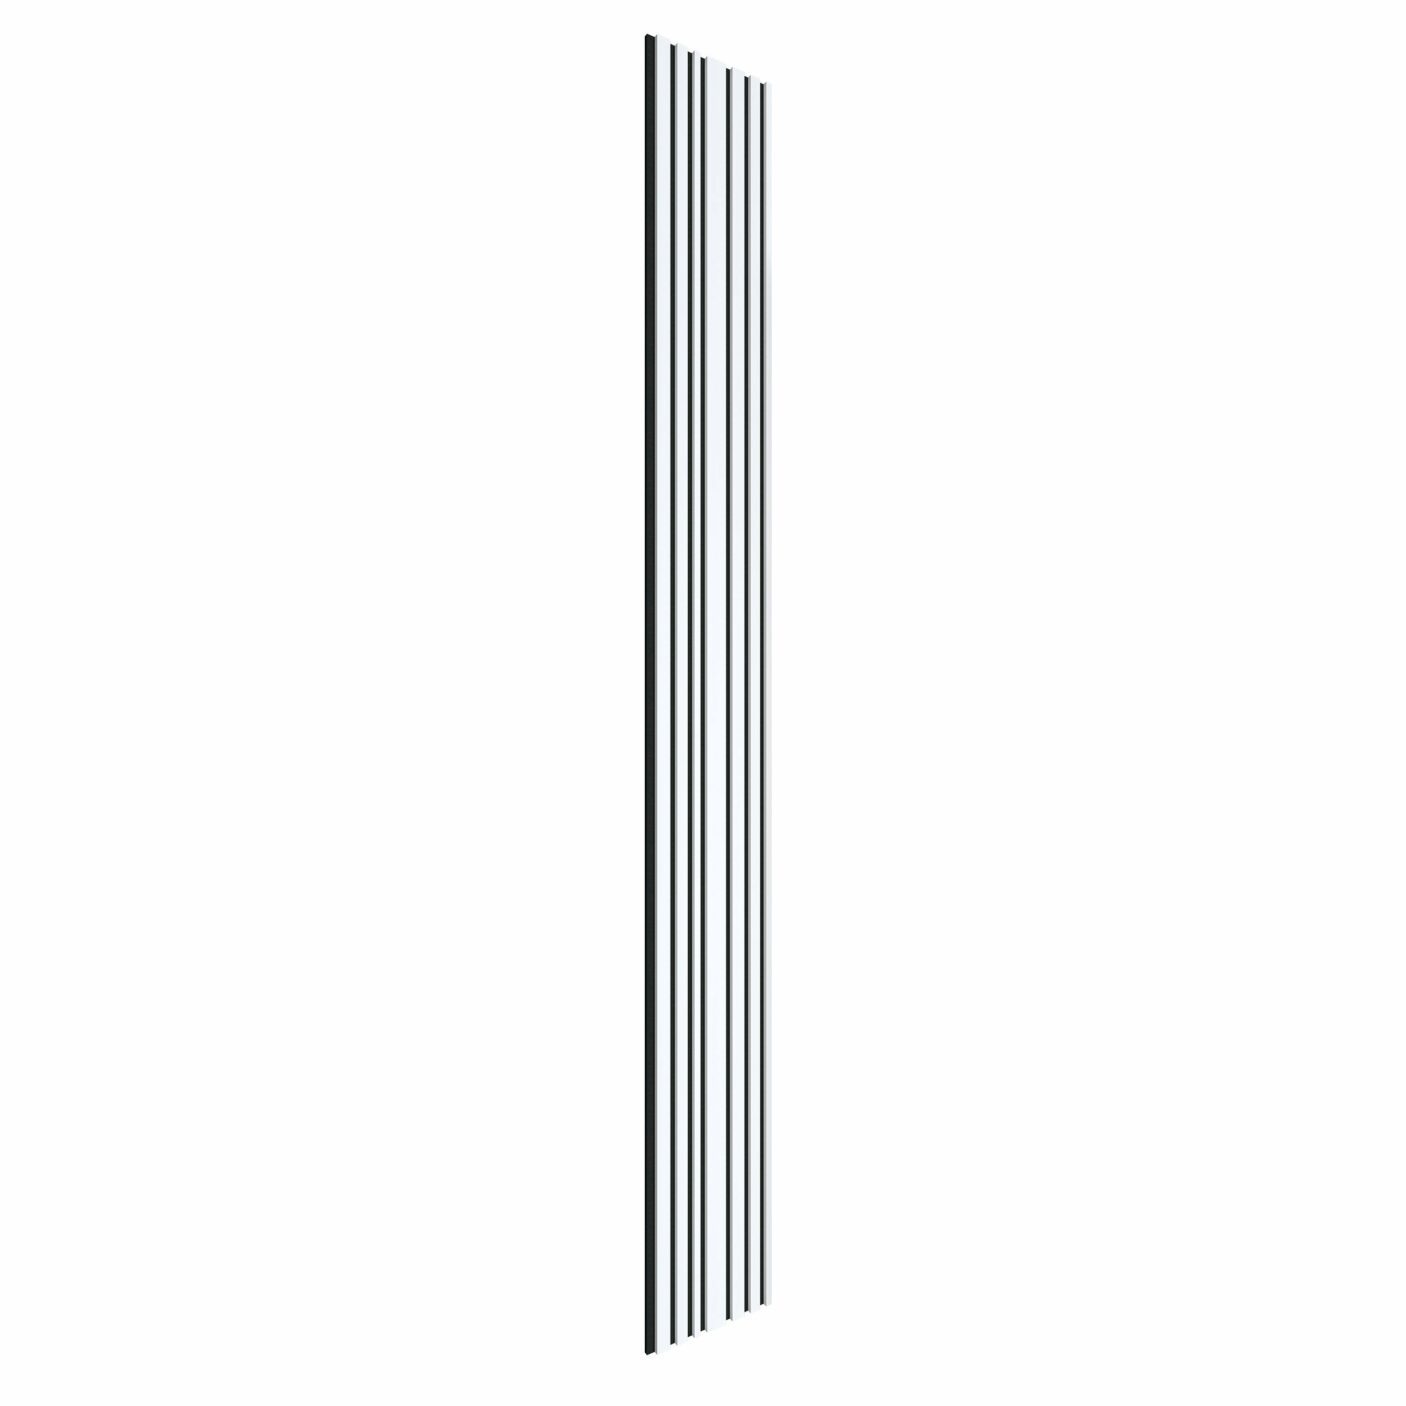 Akustinė lamelių sienelė, 265 x 30 cm, white